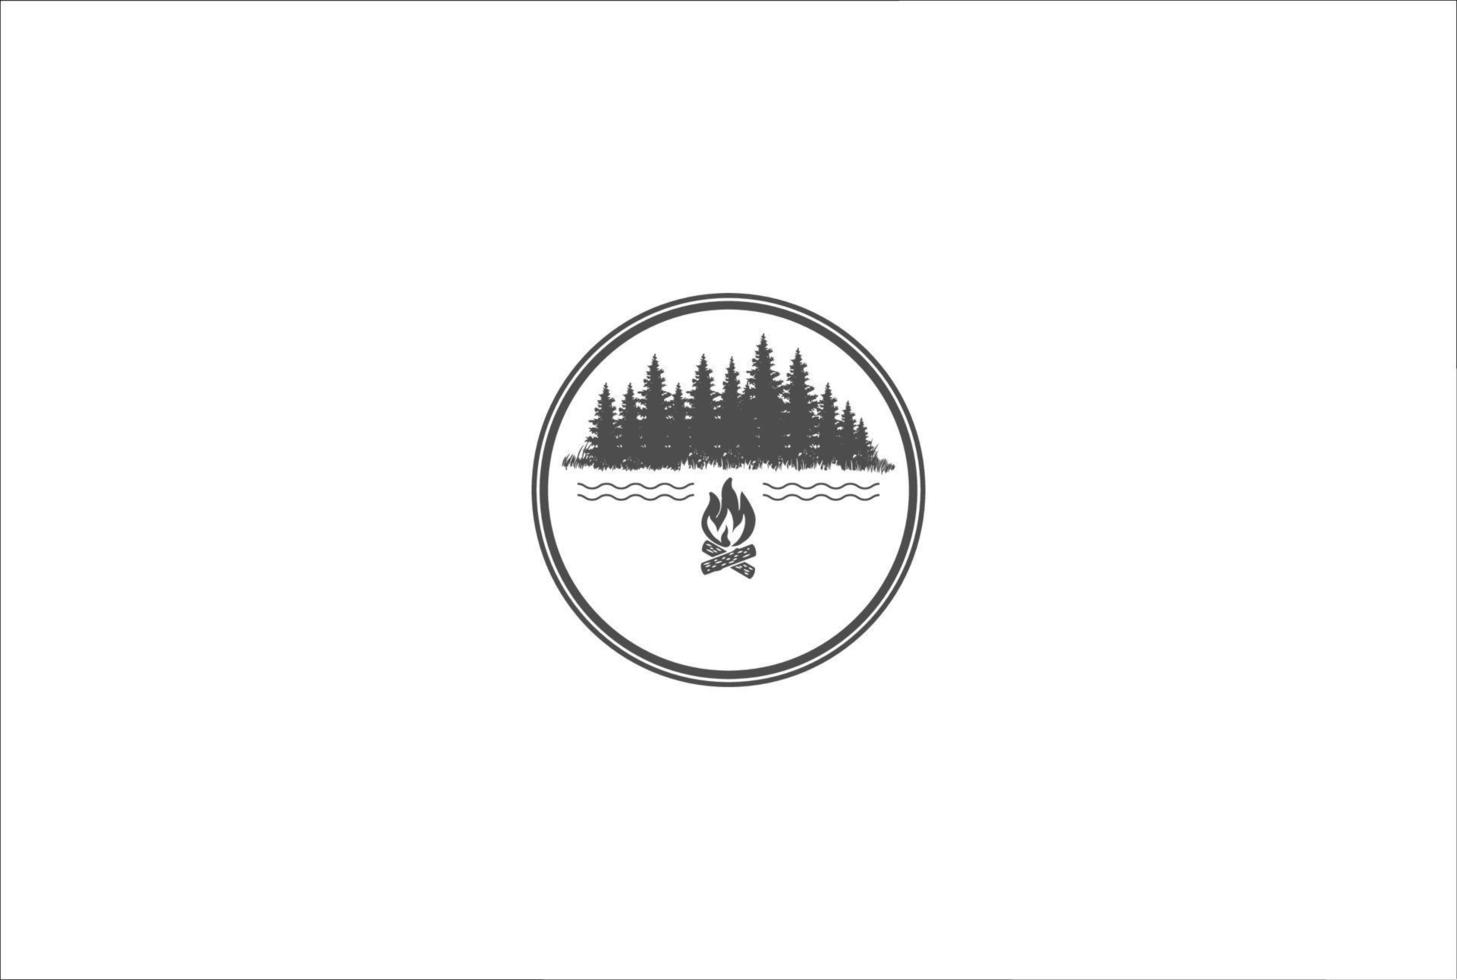 dennen ceder naald naaldhout groenblijvende spar lariks cipres hemlock tress bos en rivier meer kreek en vreugdevuur voor kamp outdoor avontuur logo ontwerp vector